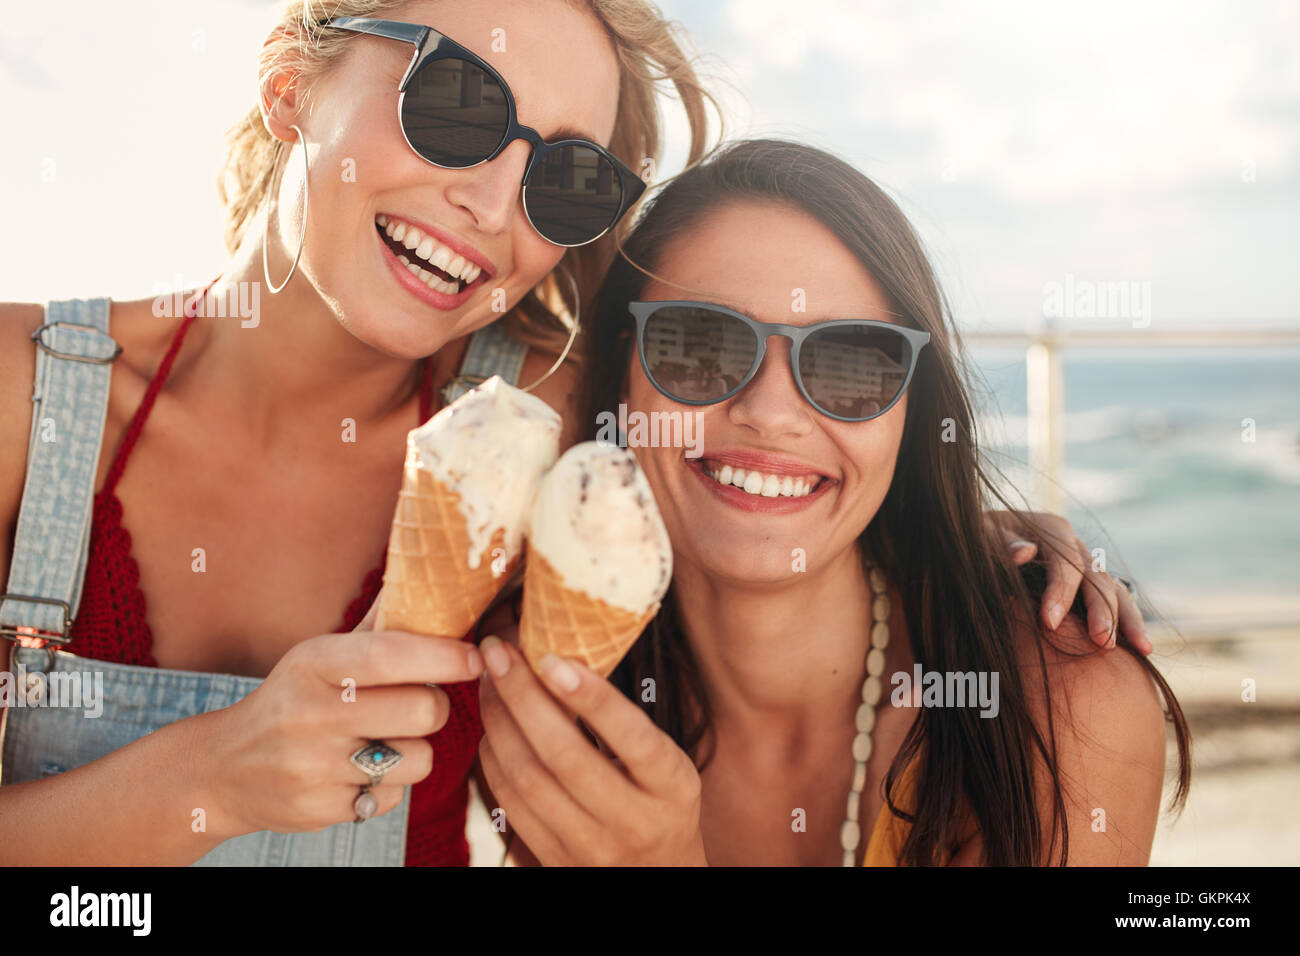 Aufnahme von zwei jungen Freunden Eis zusammen auf einem Sommer-Tag im Freien zu genießen. Nahaufnahme eines fröhlichen weibliche Freunde Essen icecr Stockfoto